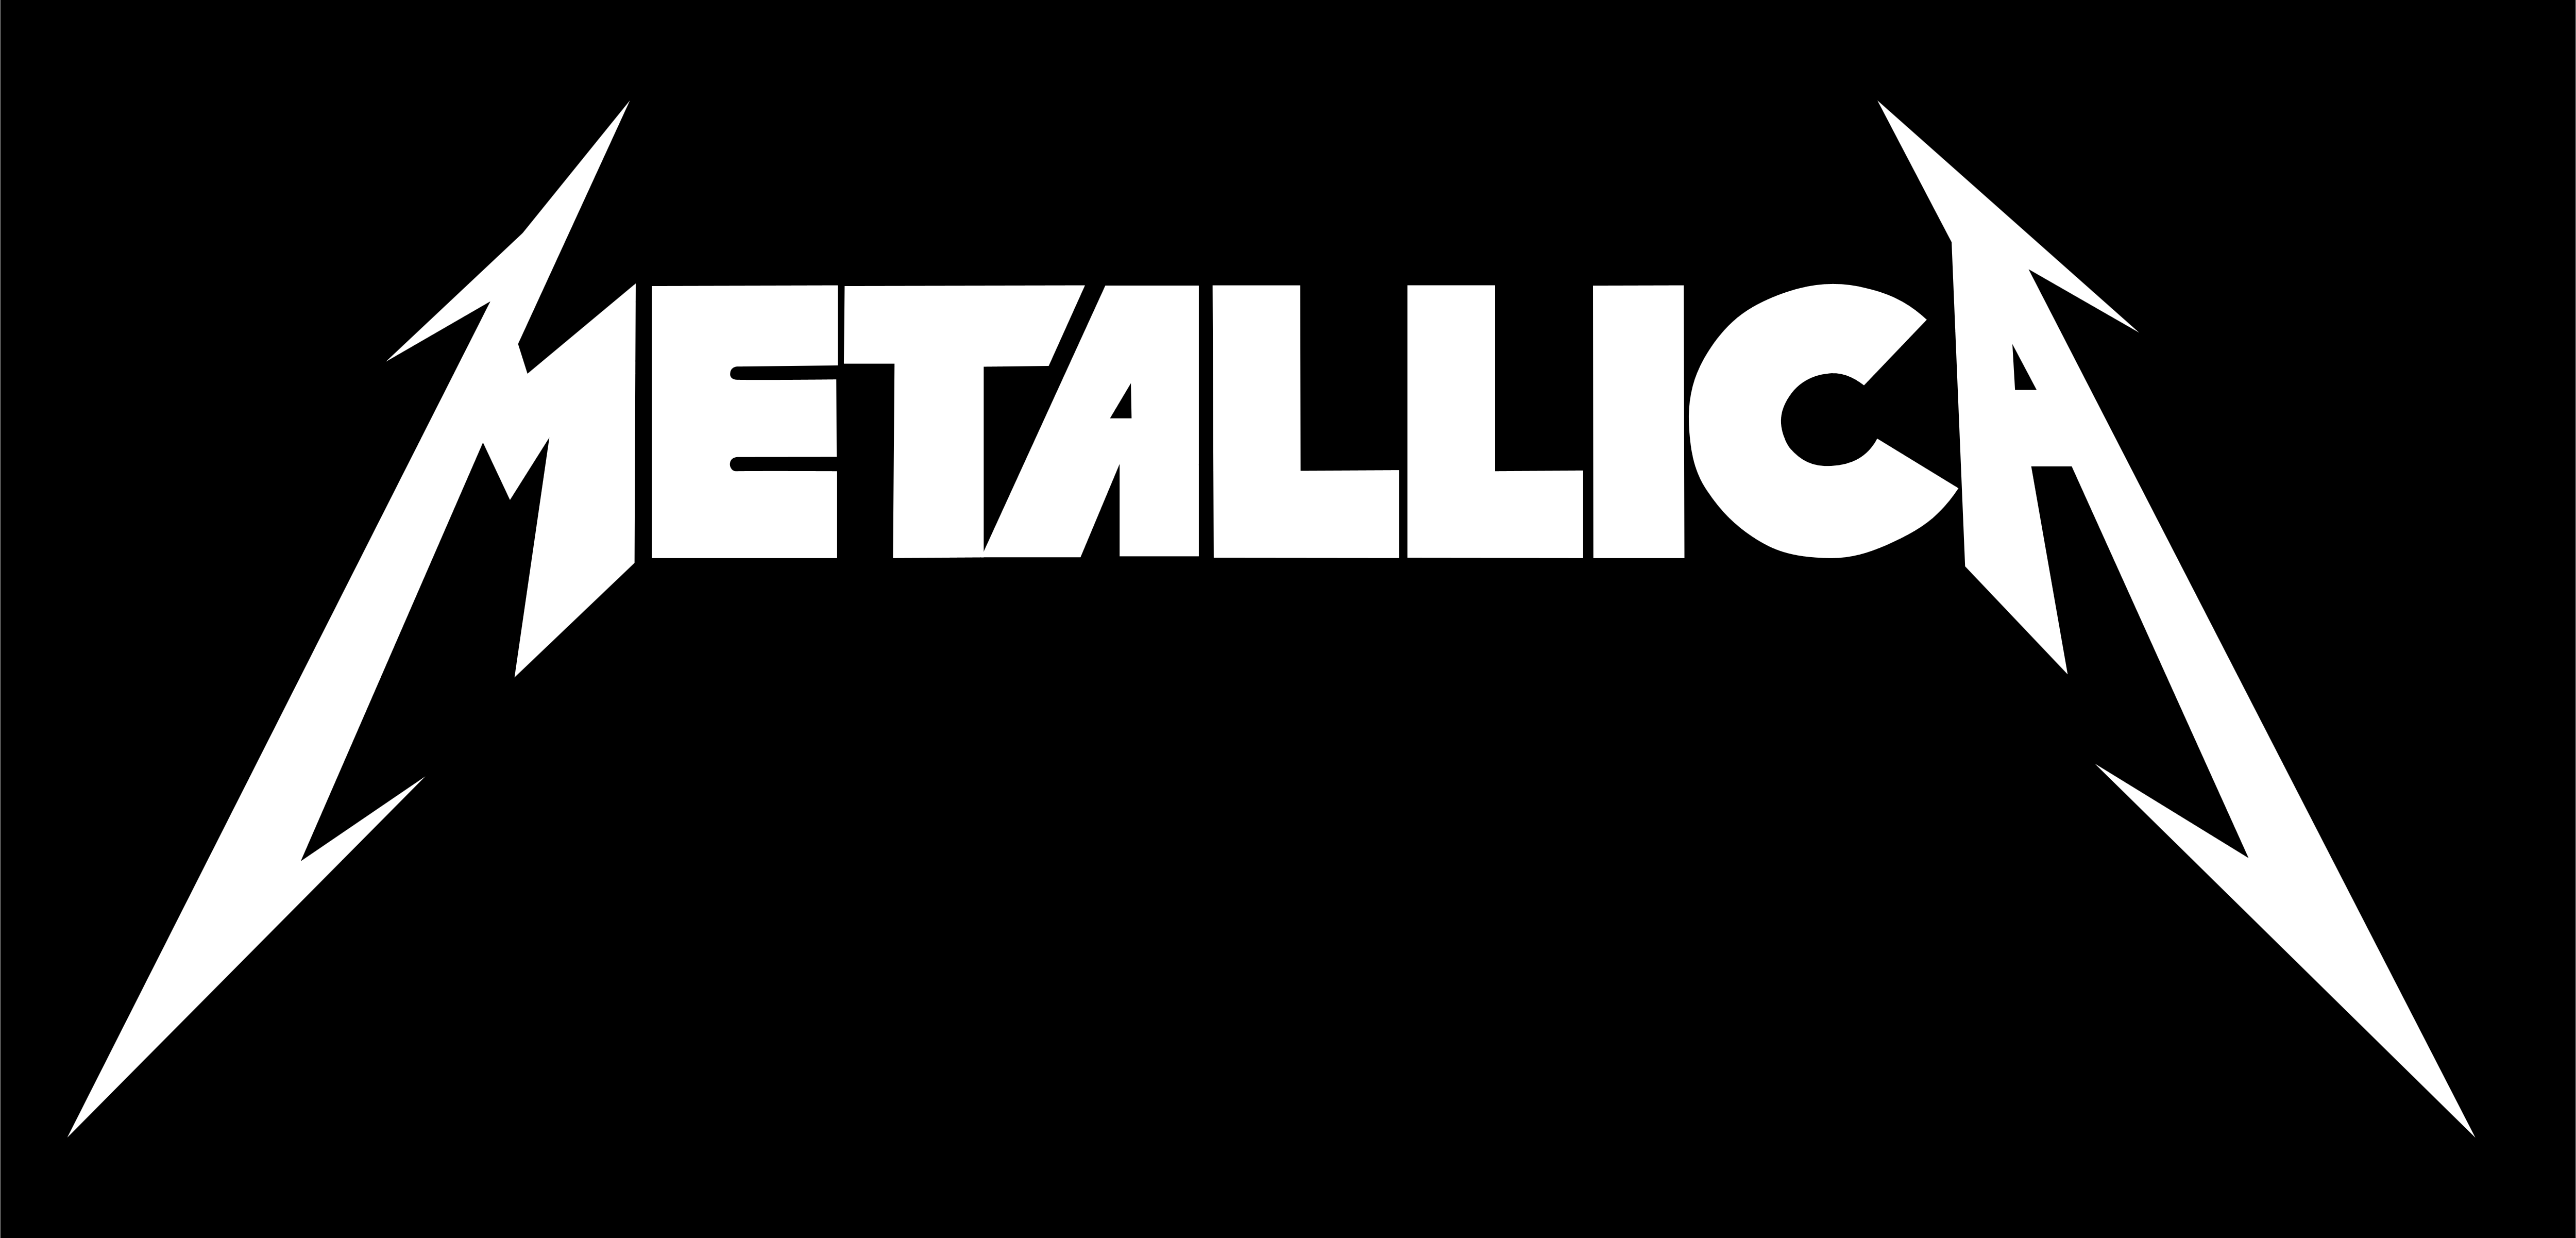 Metallica_logo_black.png